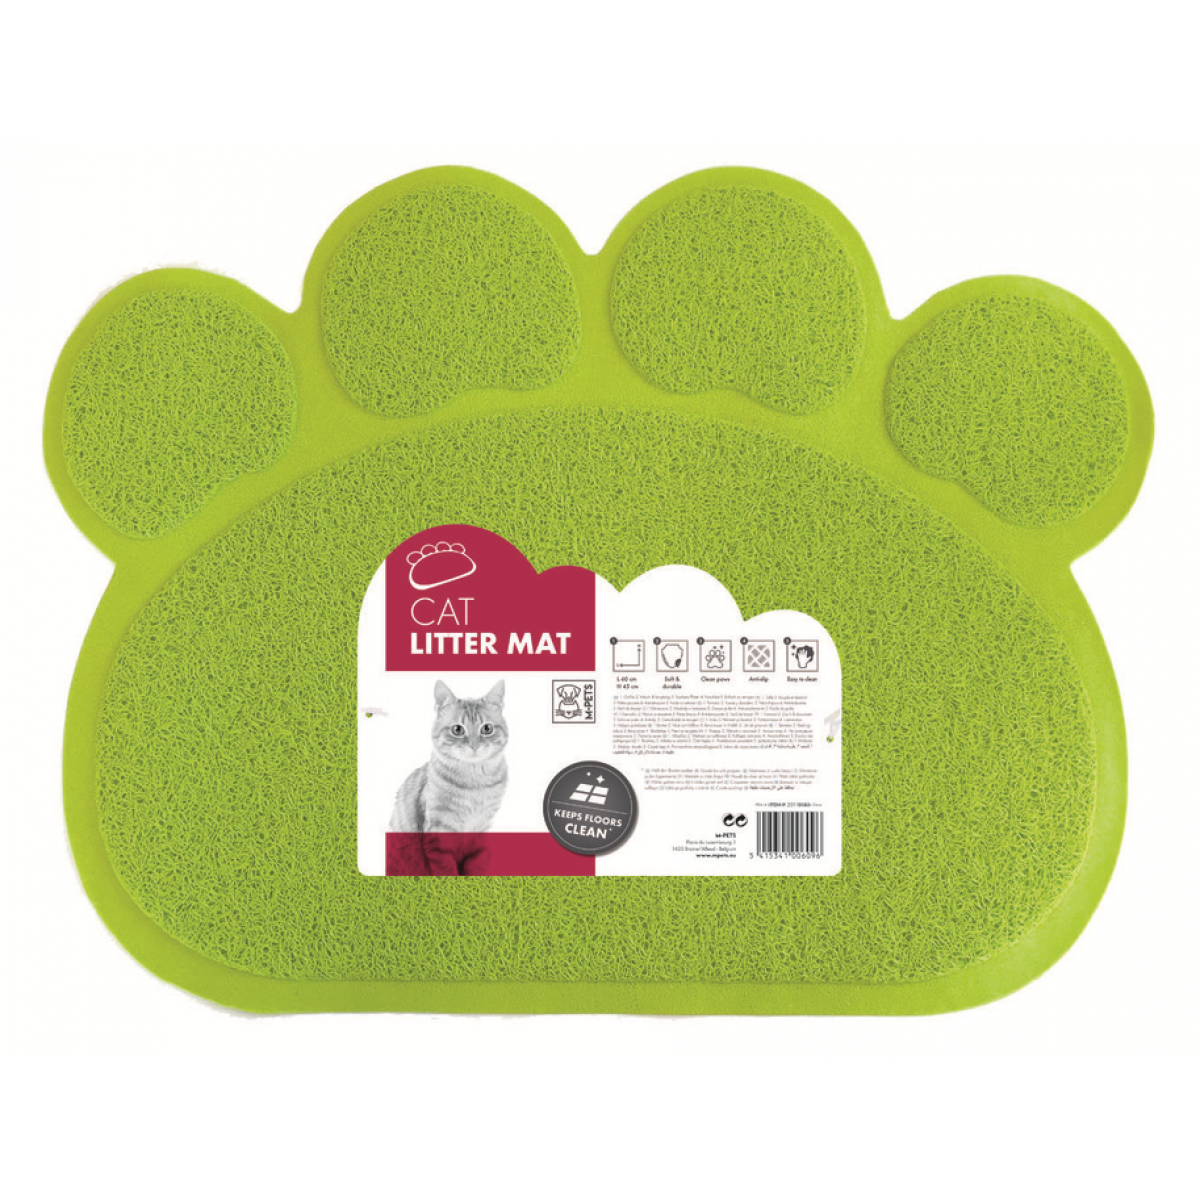 коврик притуалетный для кошачьего лотка "mpets" (мпетс), 60х45 см, зелёный